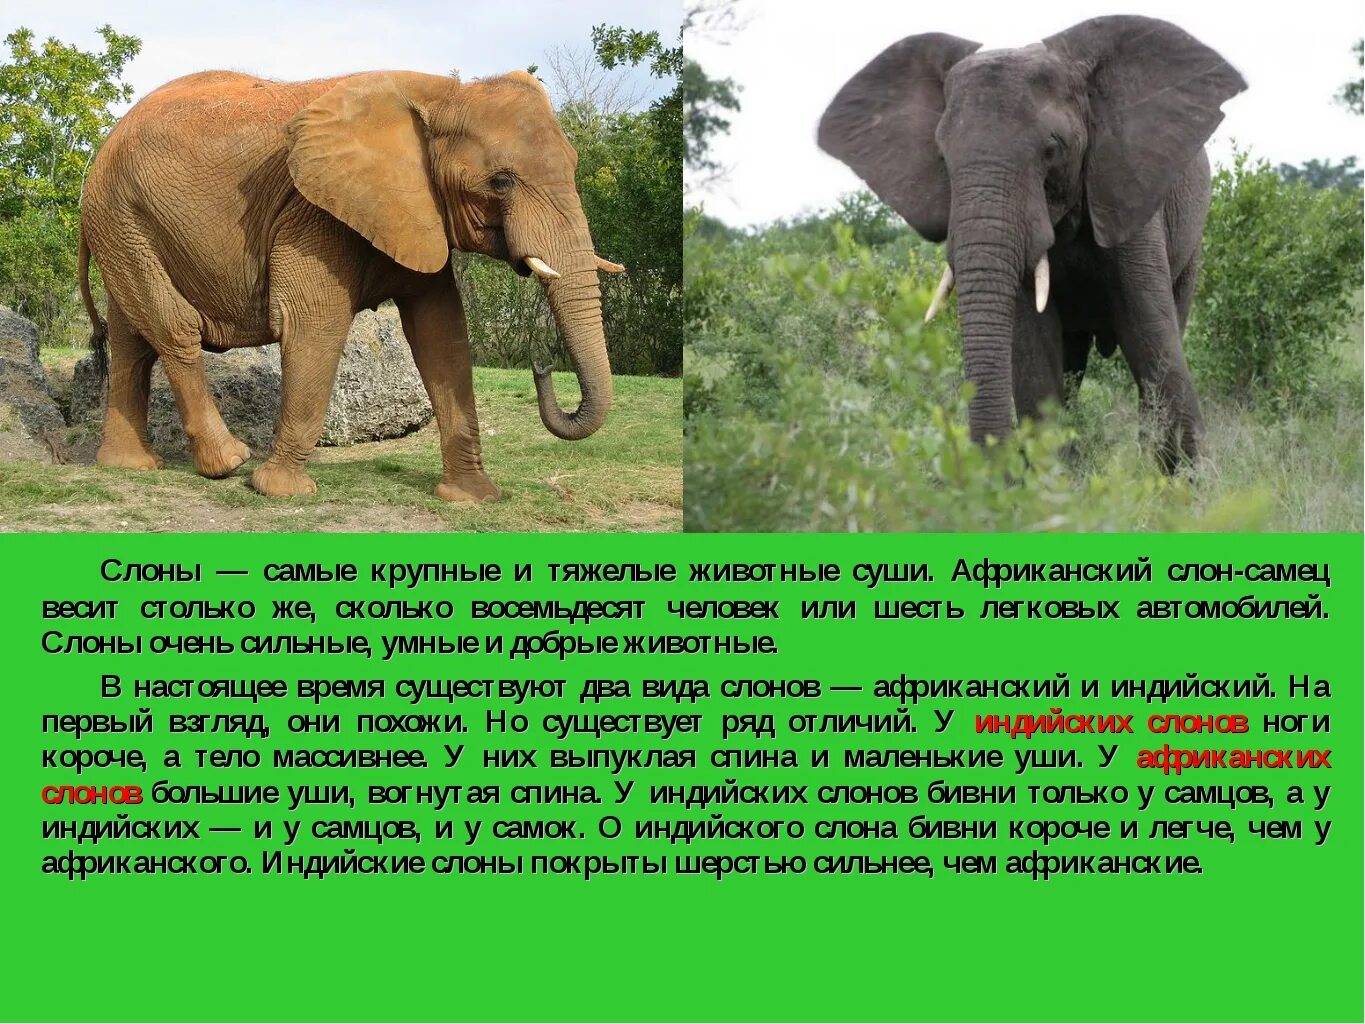 Едва ли какой либо обитатель. Описание слона. Слон описание животного. Описать слона. Африканский слон.